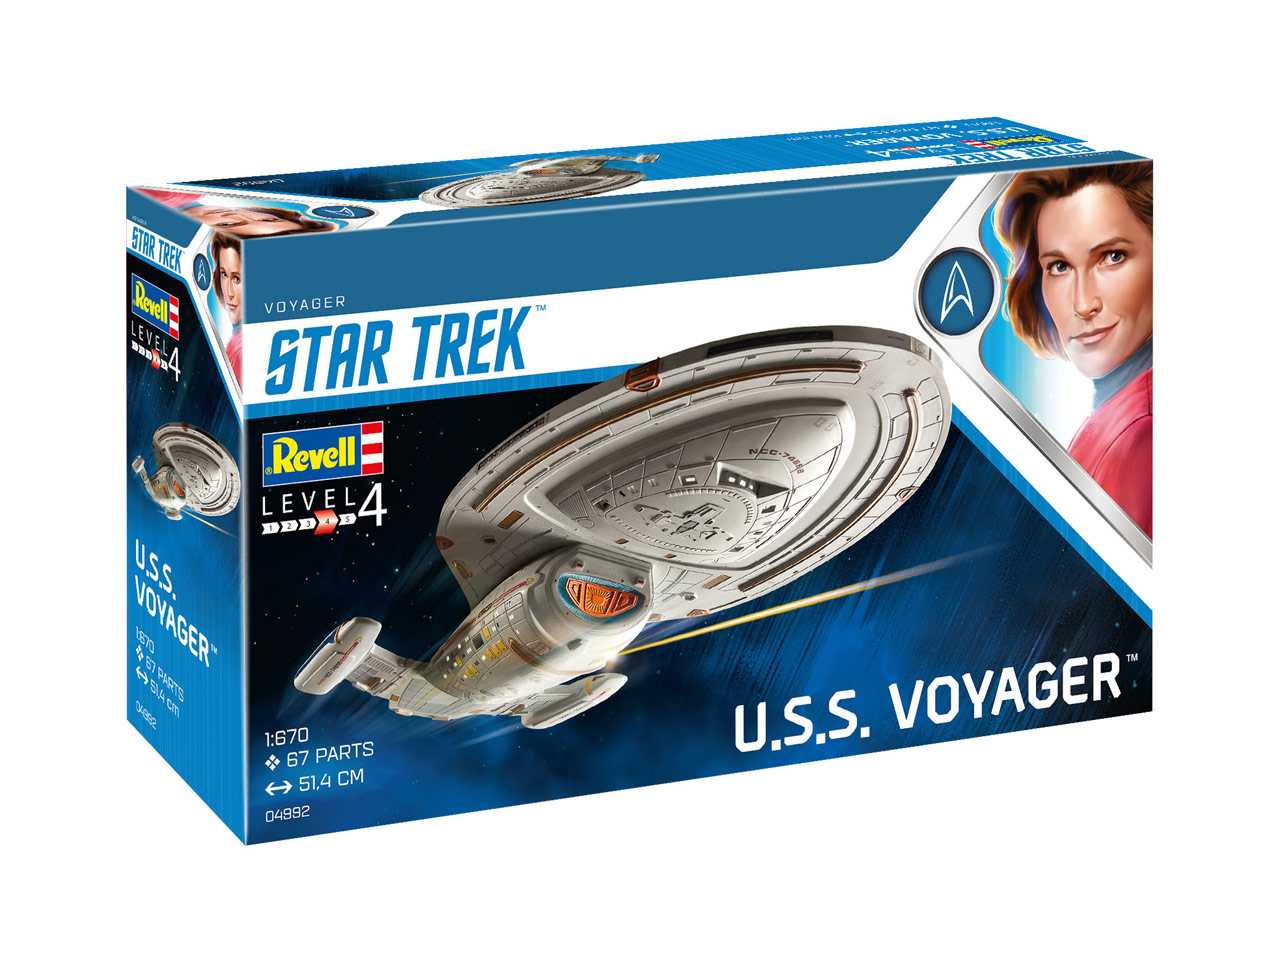 Revell Star Trek 04992 - U.S.S. Voyager (1:670)